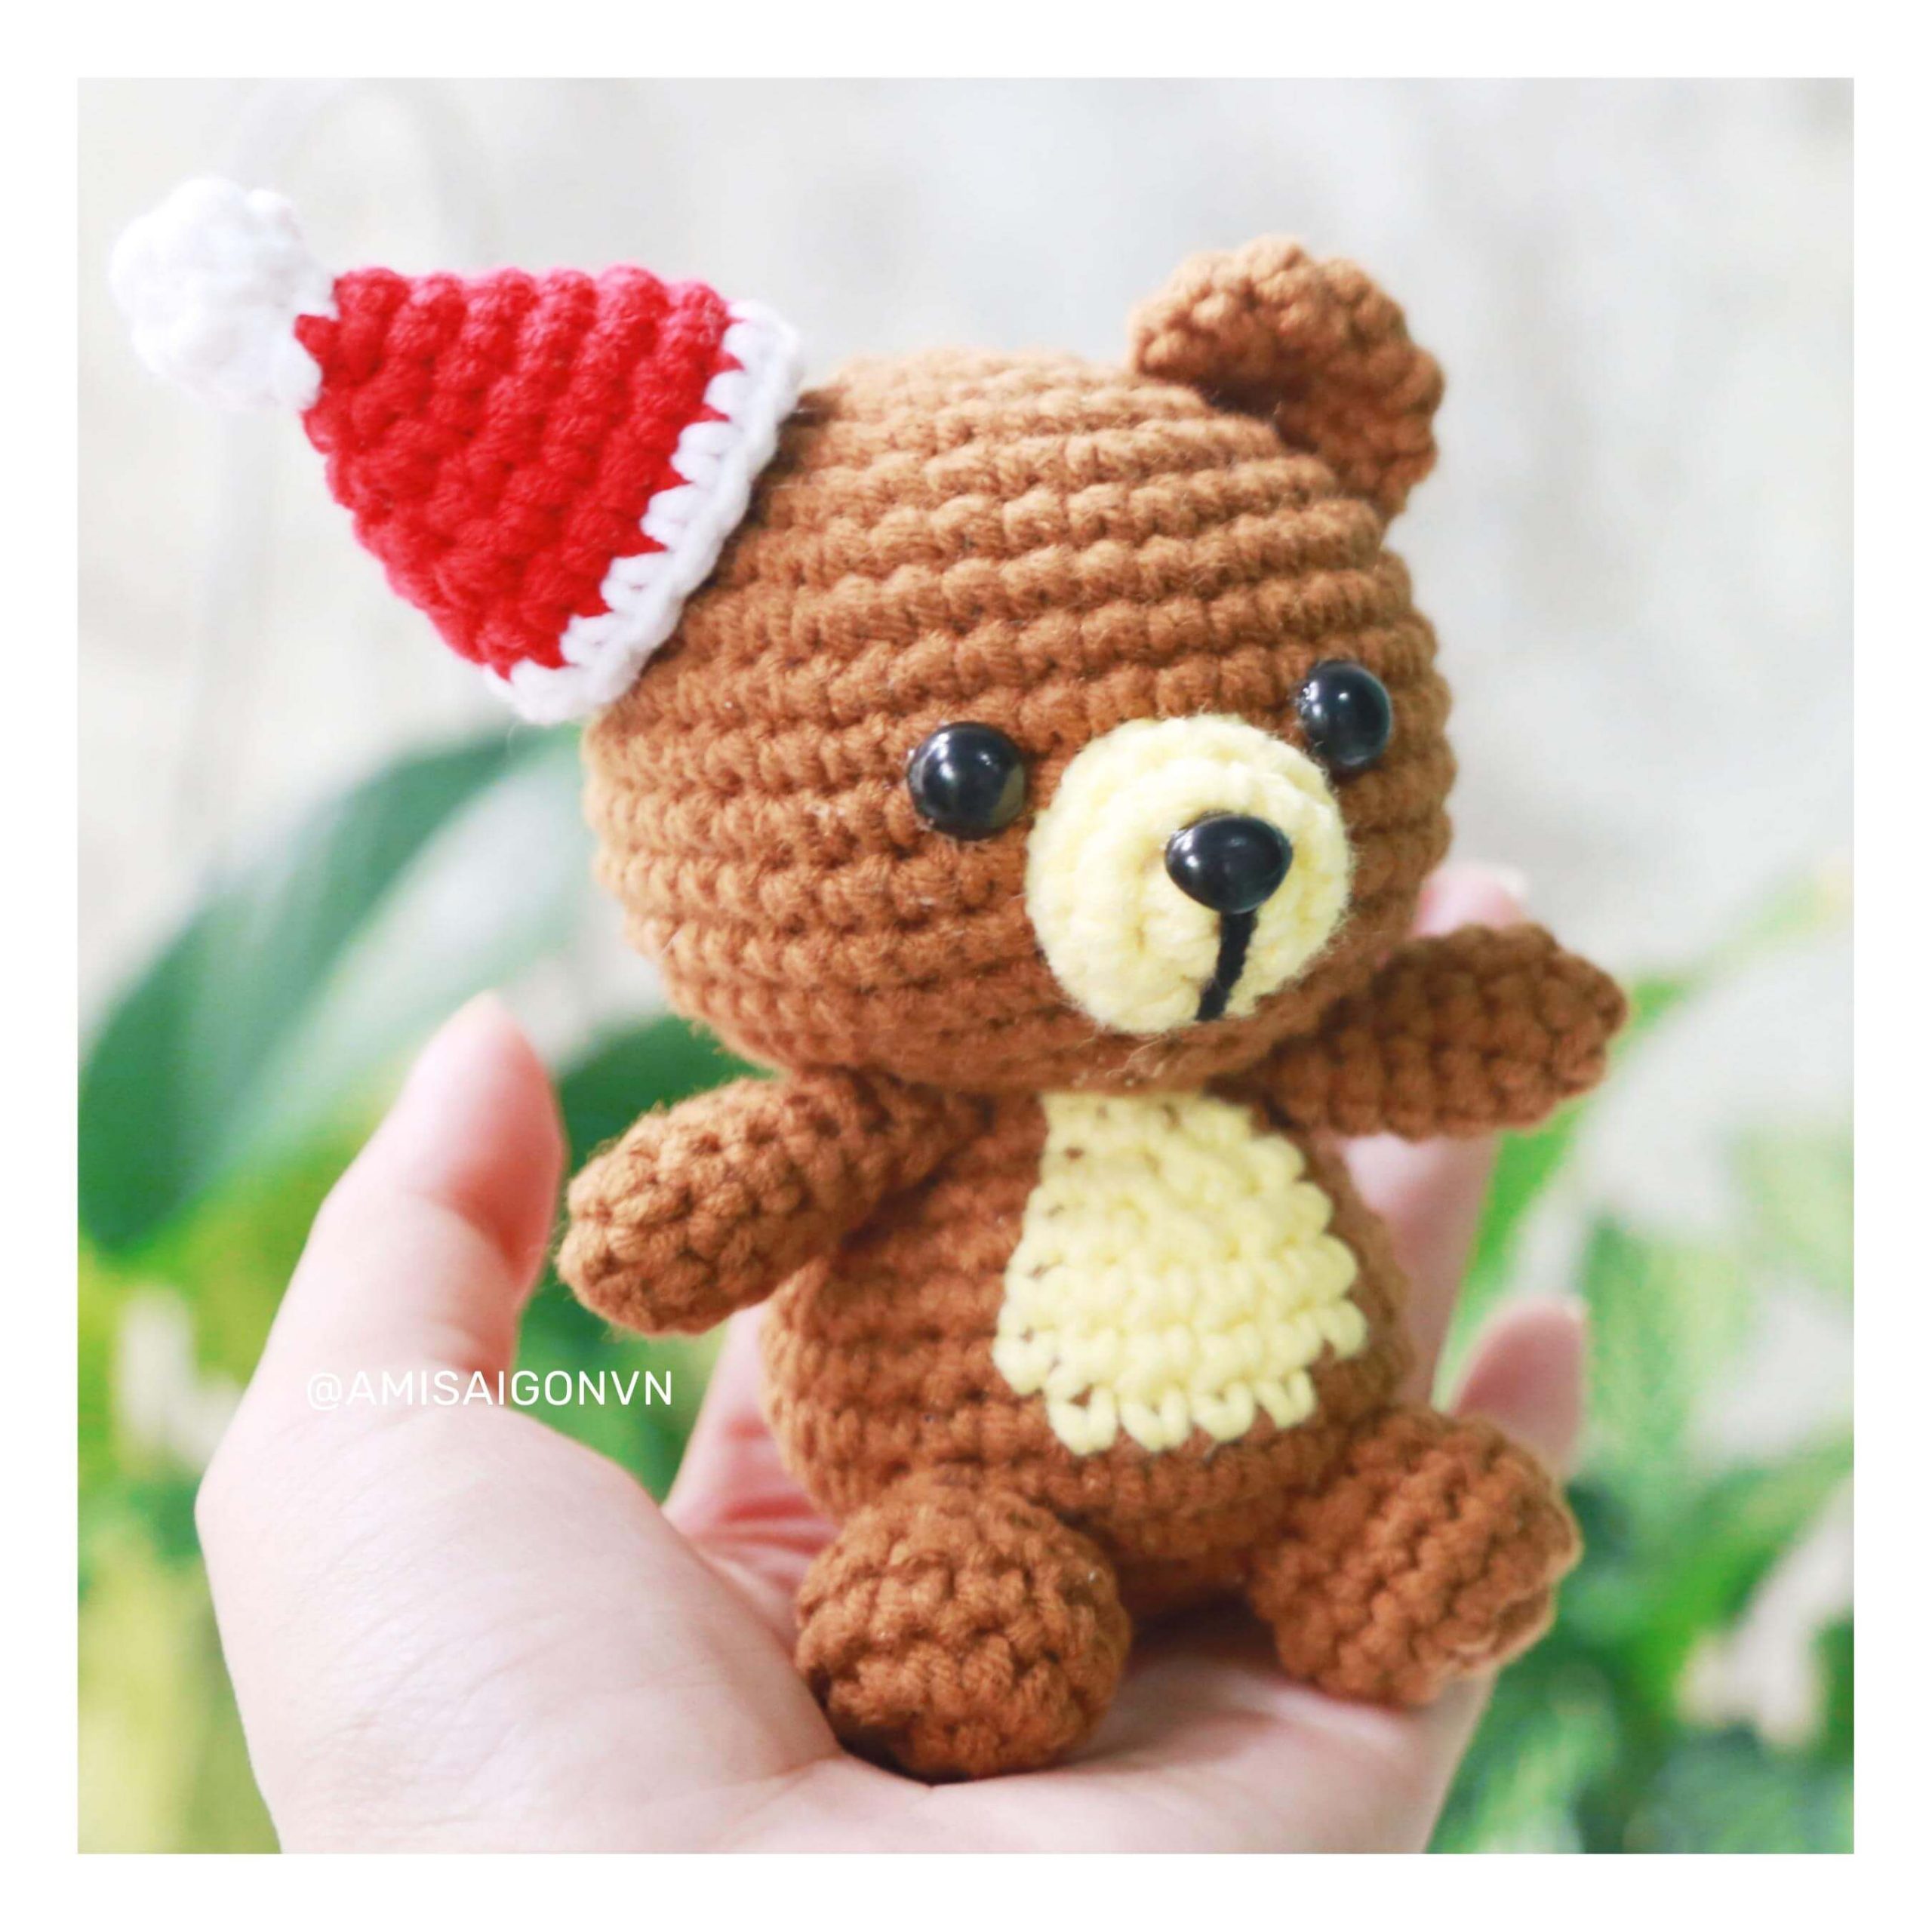 teddy-bear-amigurumi-crochet-pattern-by-amisaigo (2)